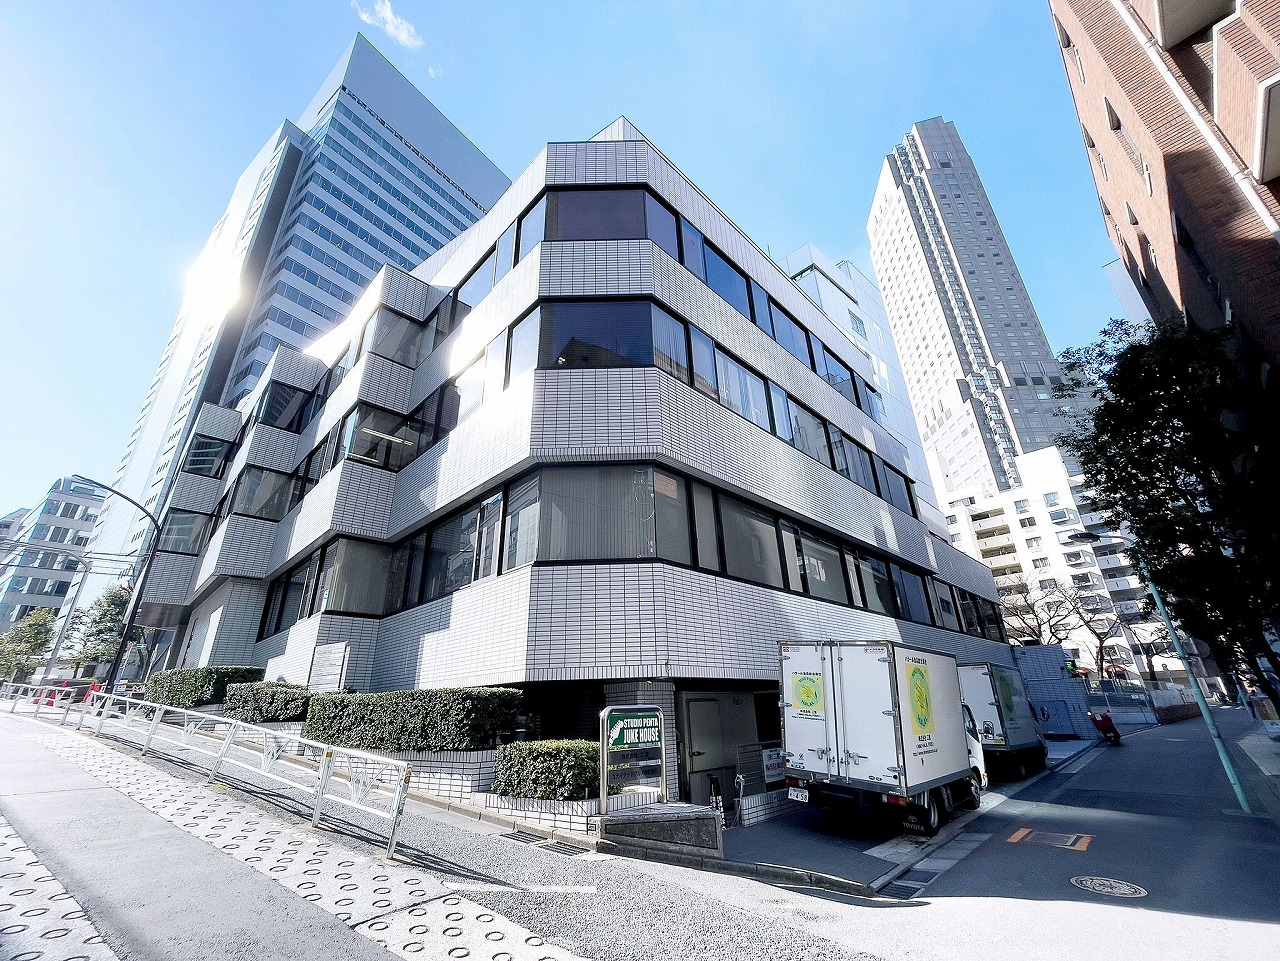 二宮ビル外観。渋谷駅C2出口から徒歩5分の場所にあります。